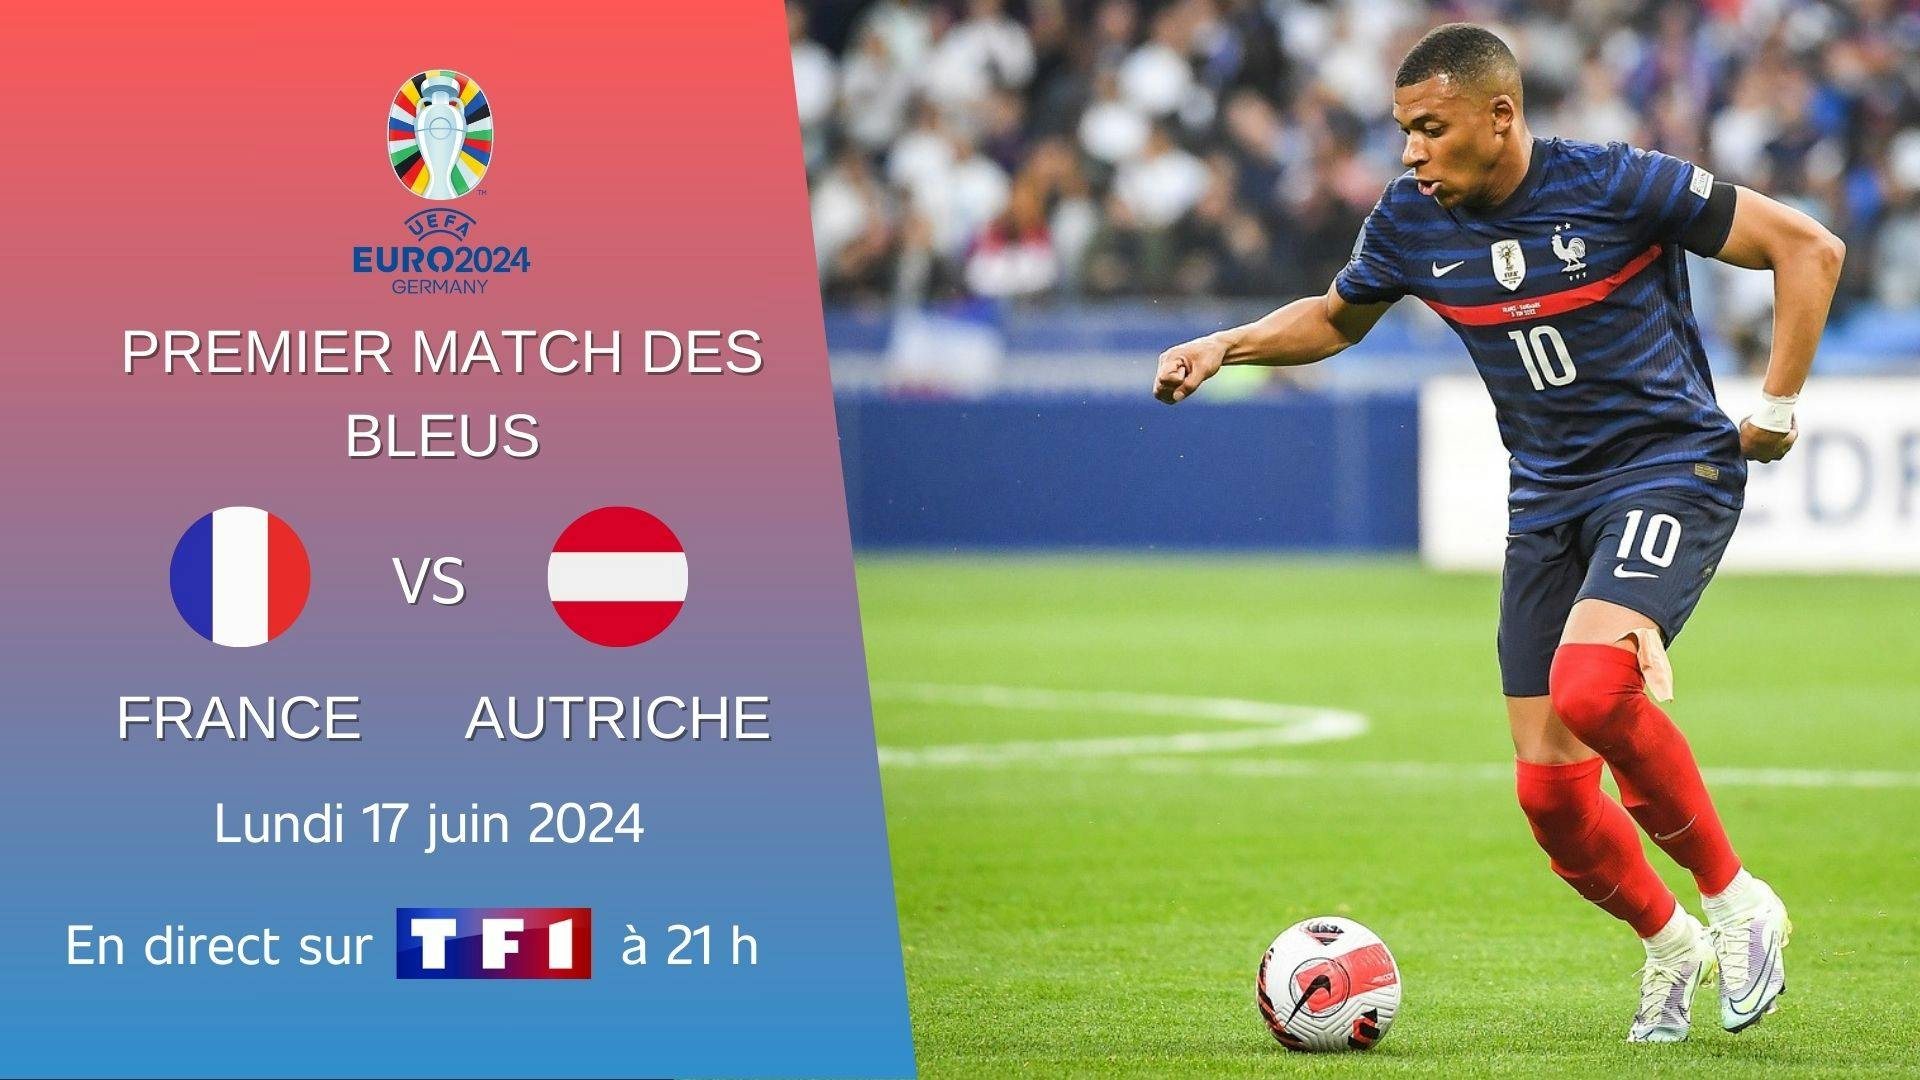 photographie du joueur français Kylian Mbappé avec du texte qui indique le lieu, la date et la chaîne de diffusion du premier match de l’équipe de France à l’Euro 2024.